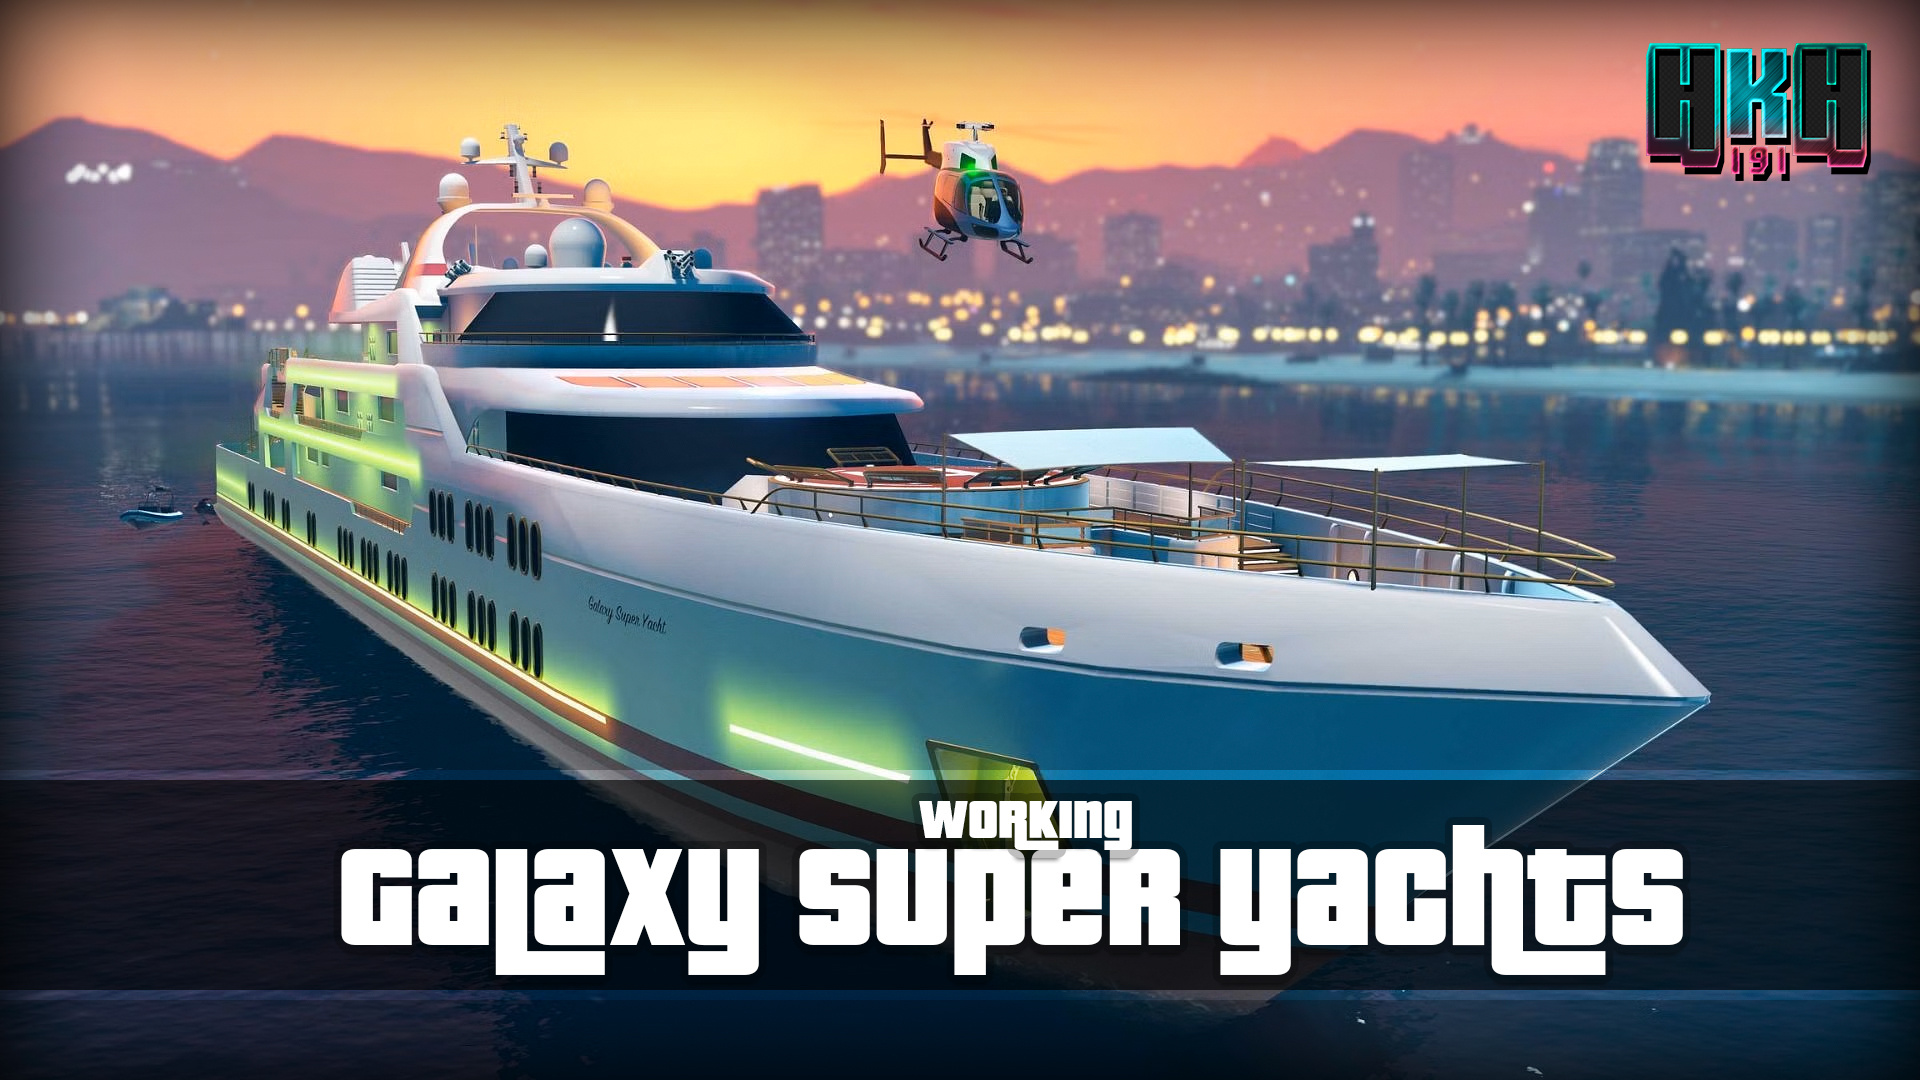 Max Speed Codes For November 2023 - GameRiv